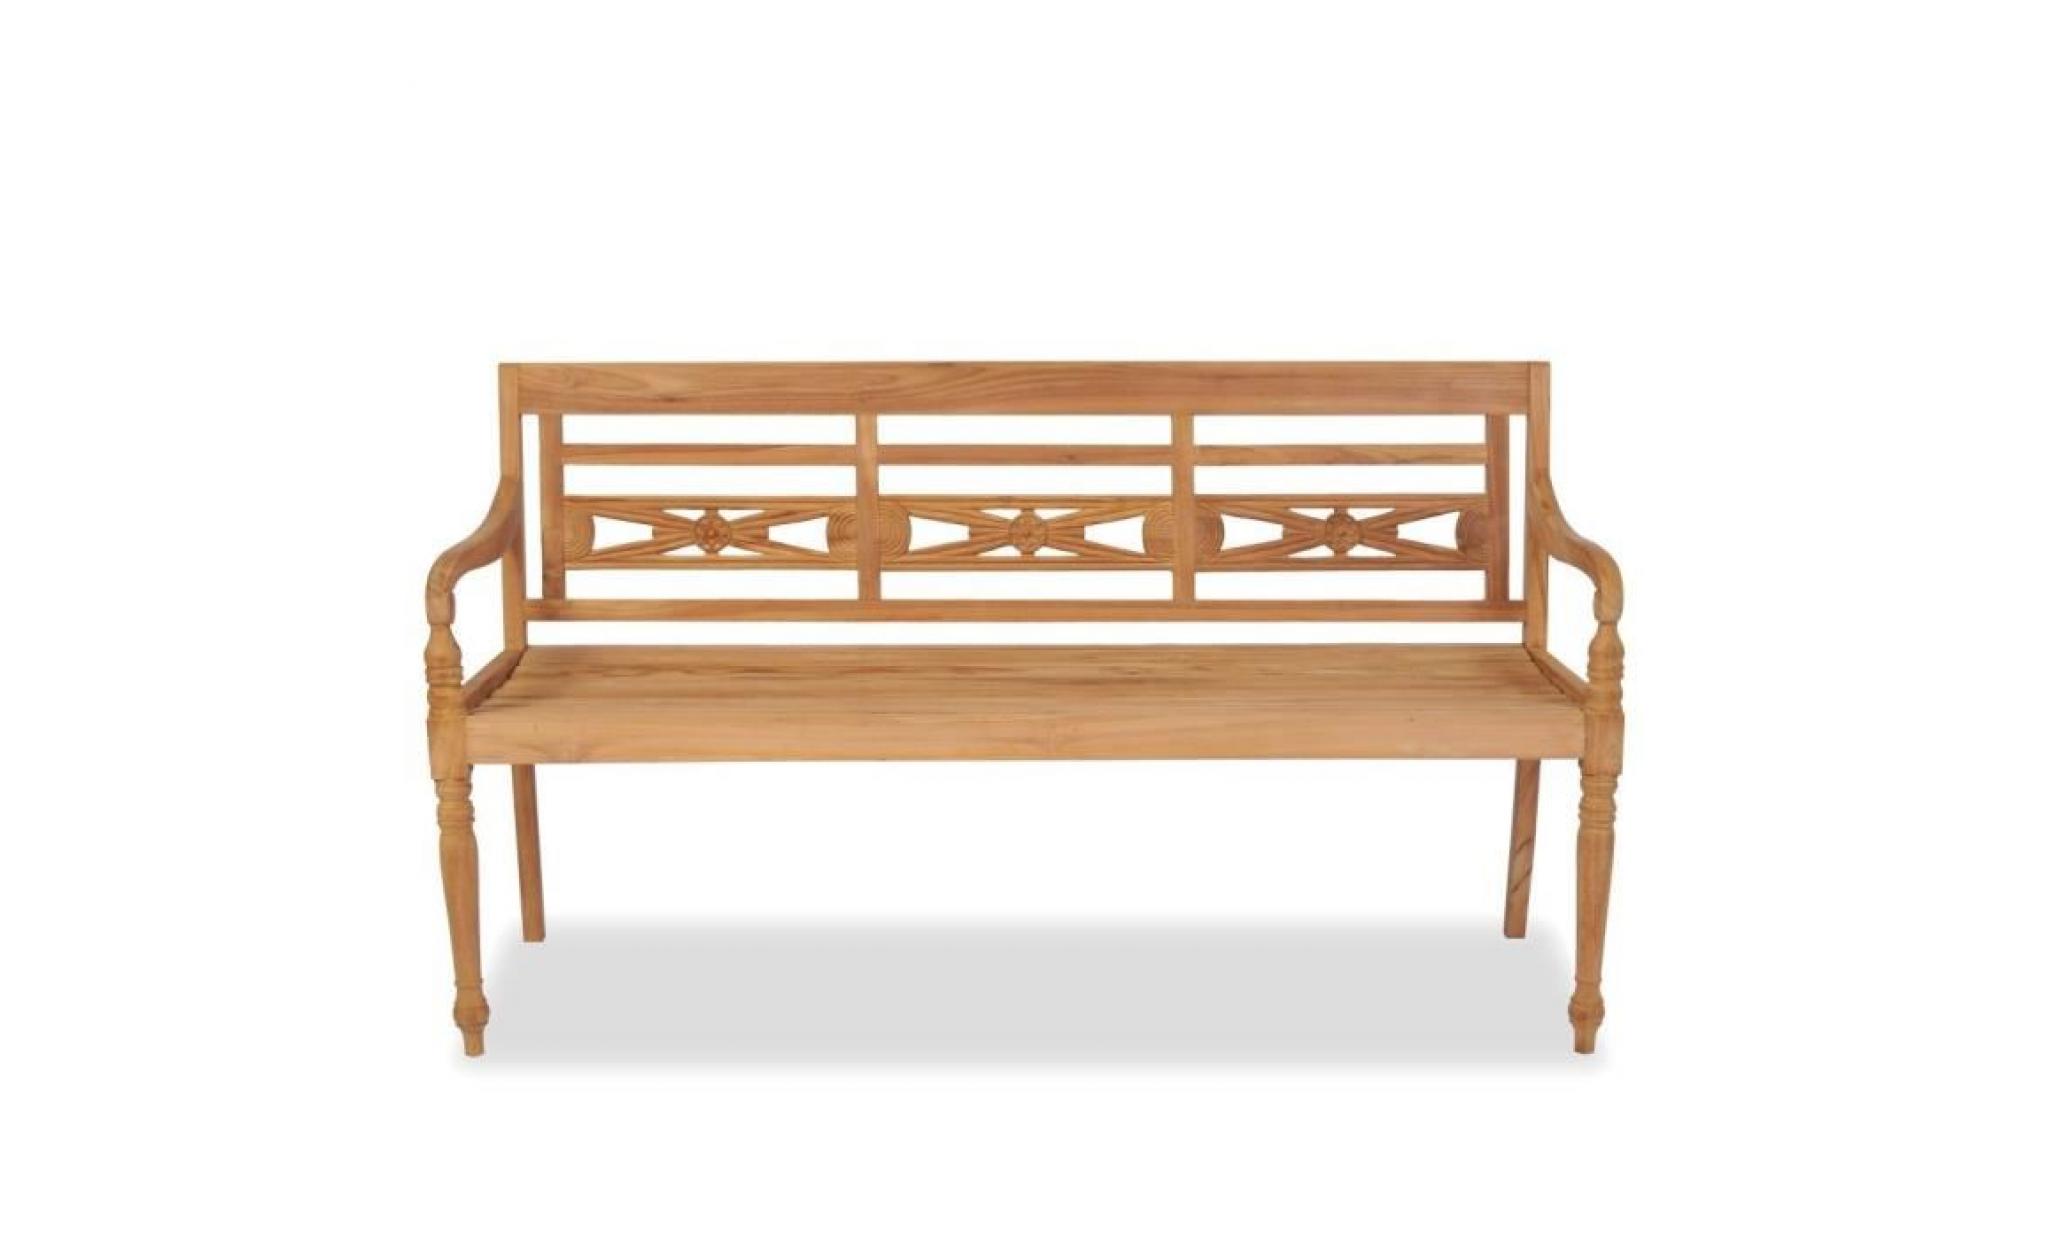 r148 ajoutez une touche d'elegance a votre espace de vie exterieur avec ce banc batavia a 3 places en bois de teck massi